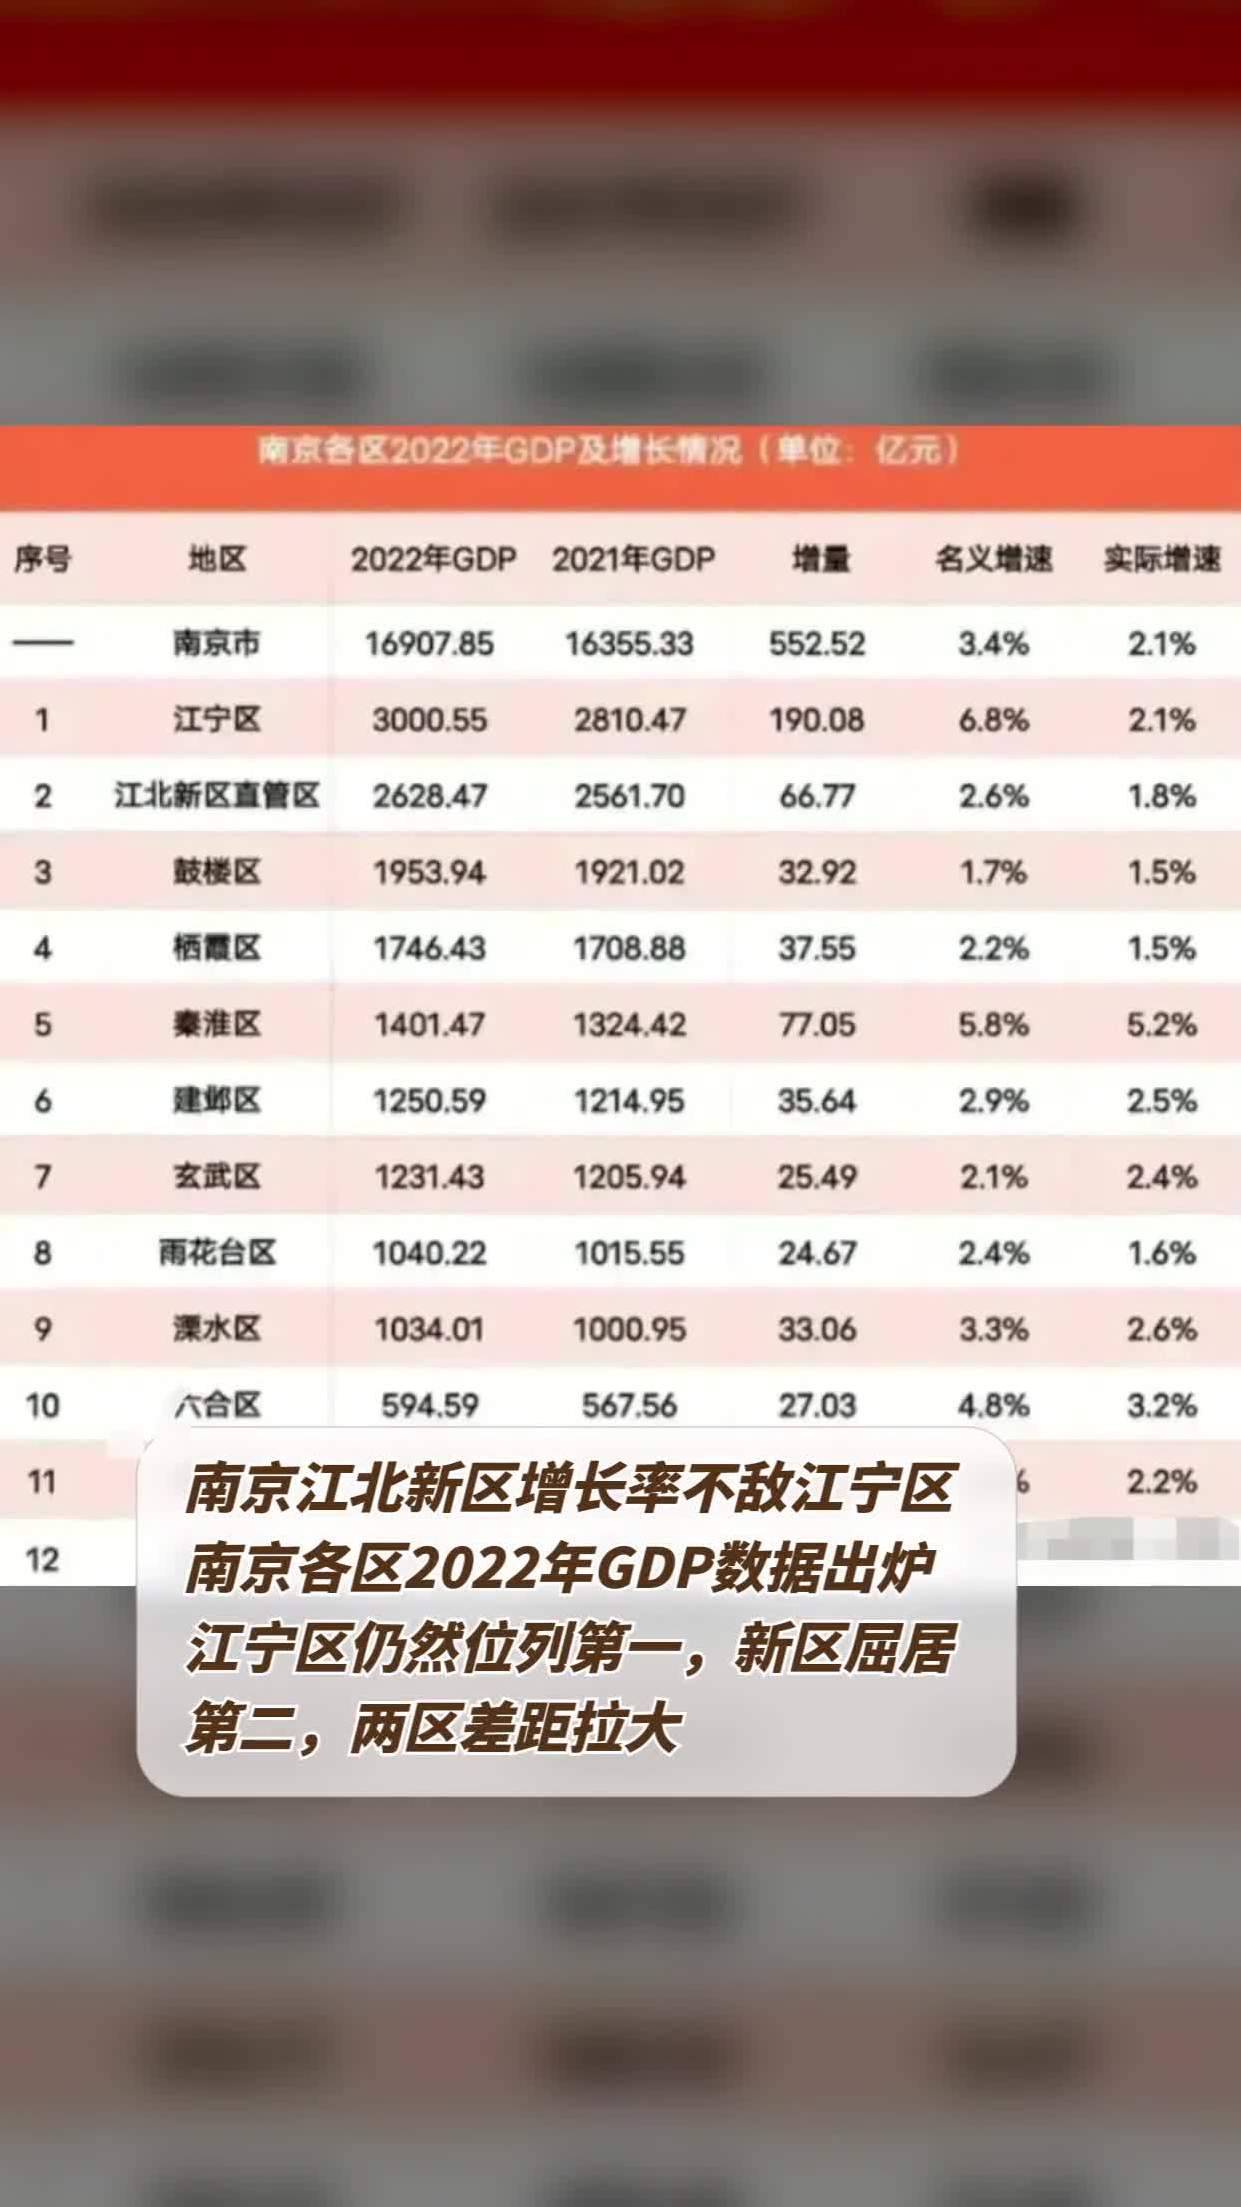 南京各区2022年gdp数据出炉,江宁区仍然位列第一,新区屈居第二,两区